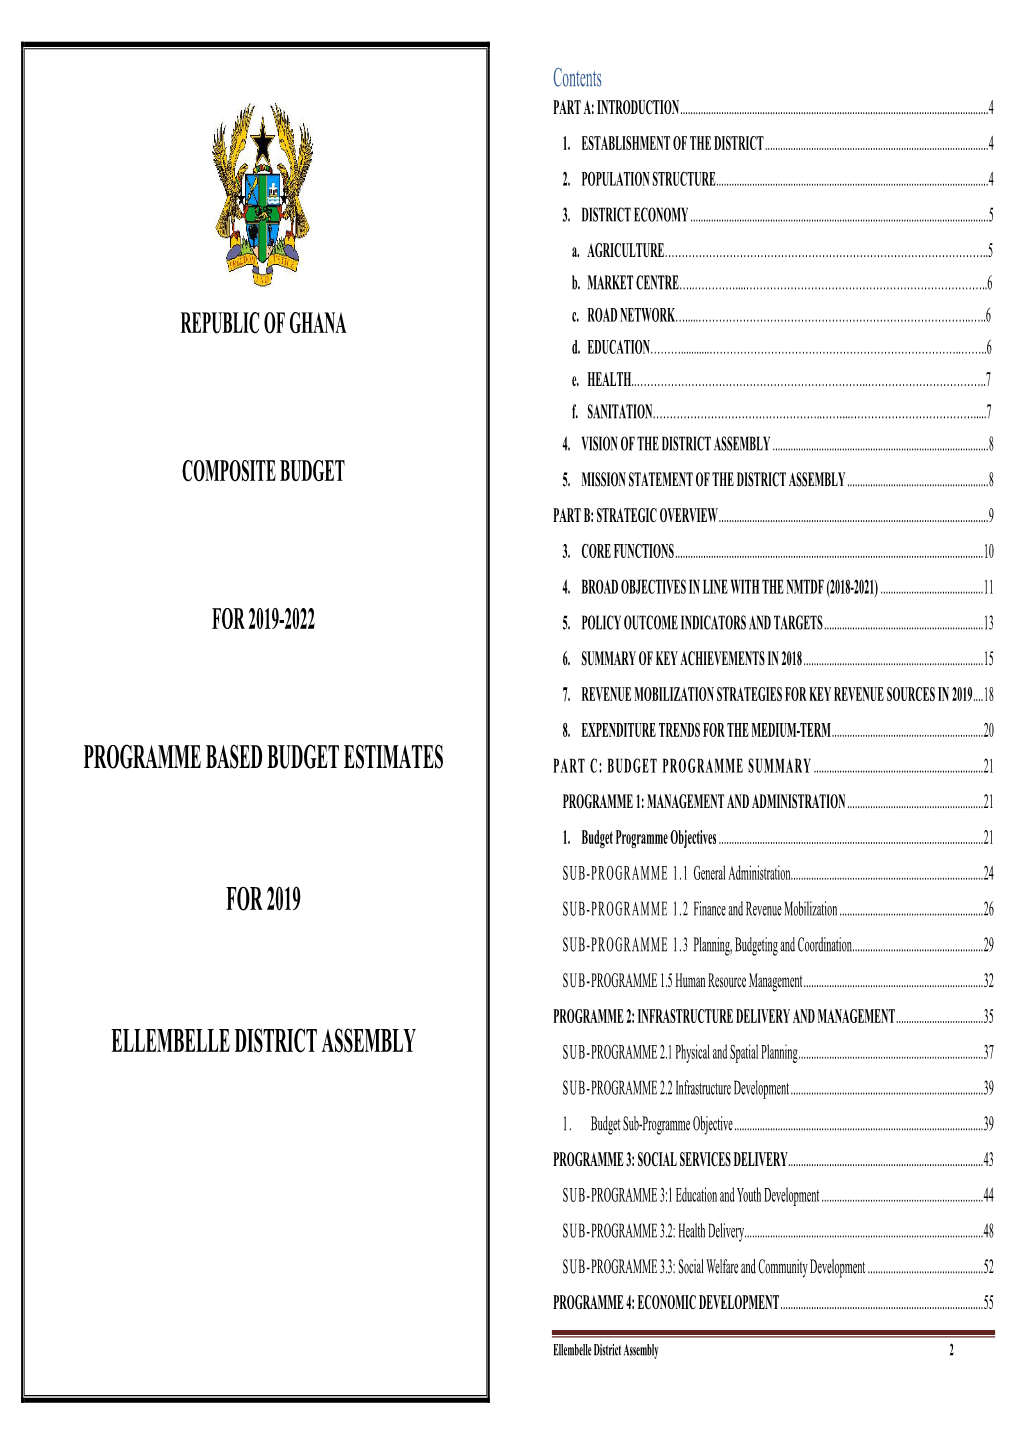 Programme Based Budget Estimates for 2019 Ellembelle District Assembly